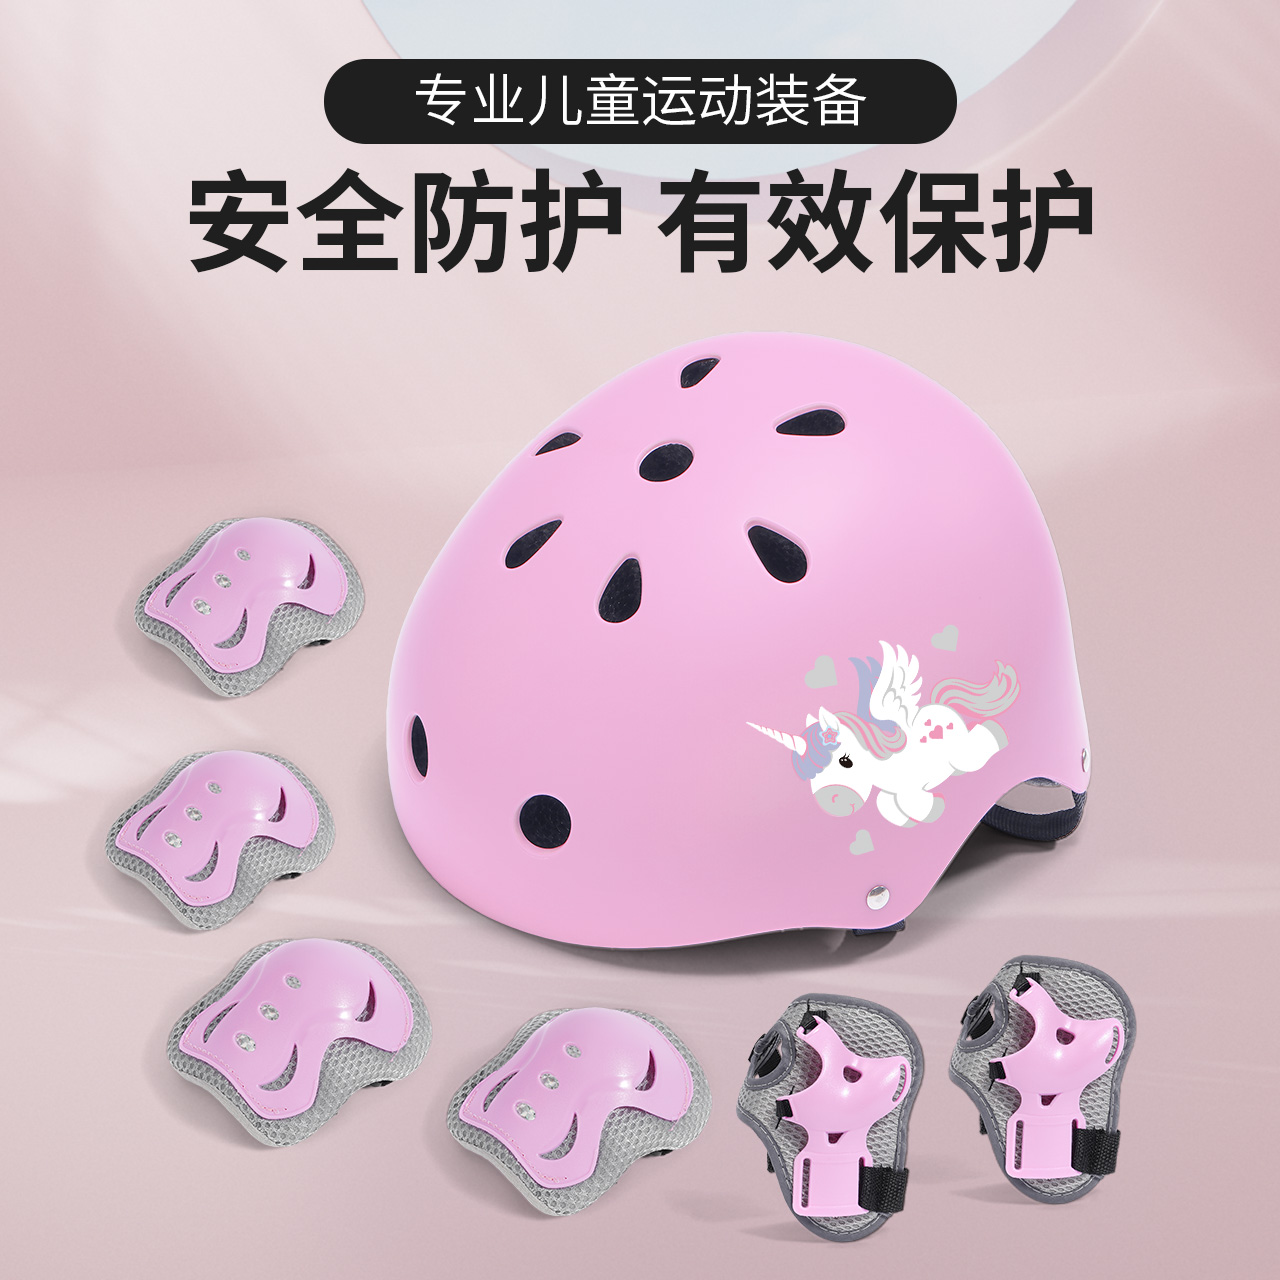 雅卫护具护具头盔多种搭配选择